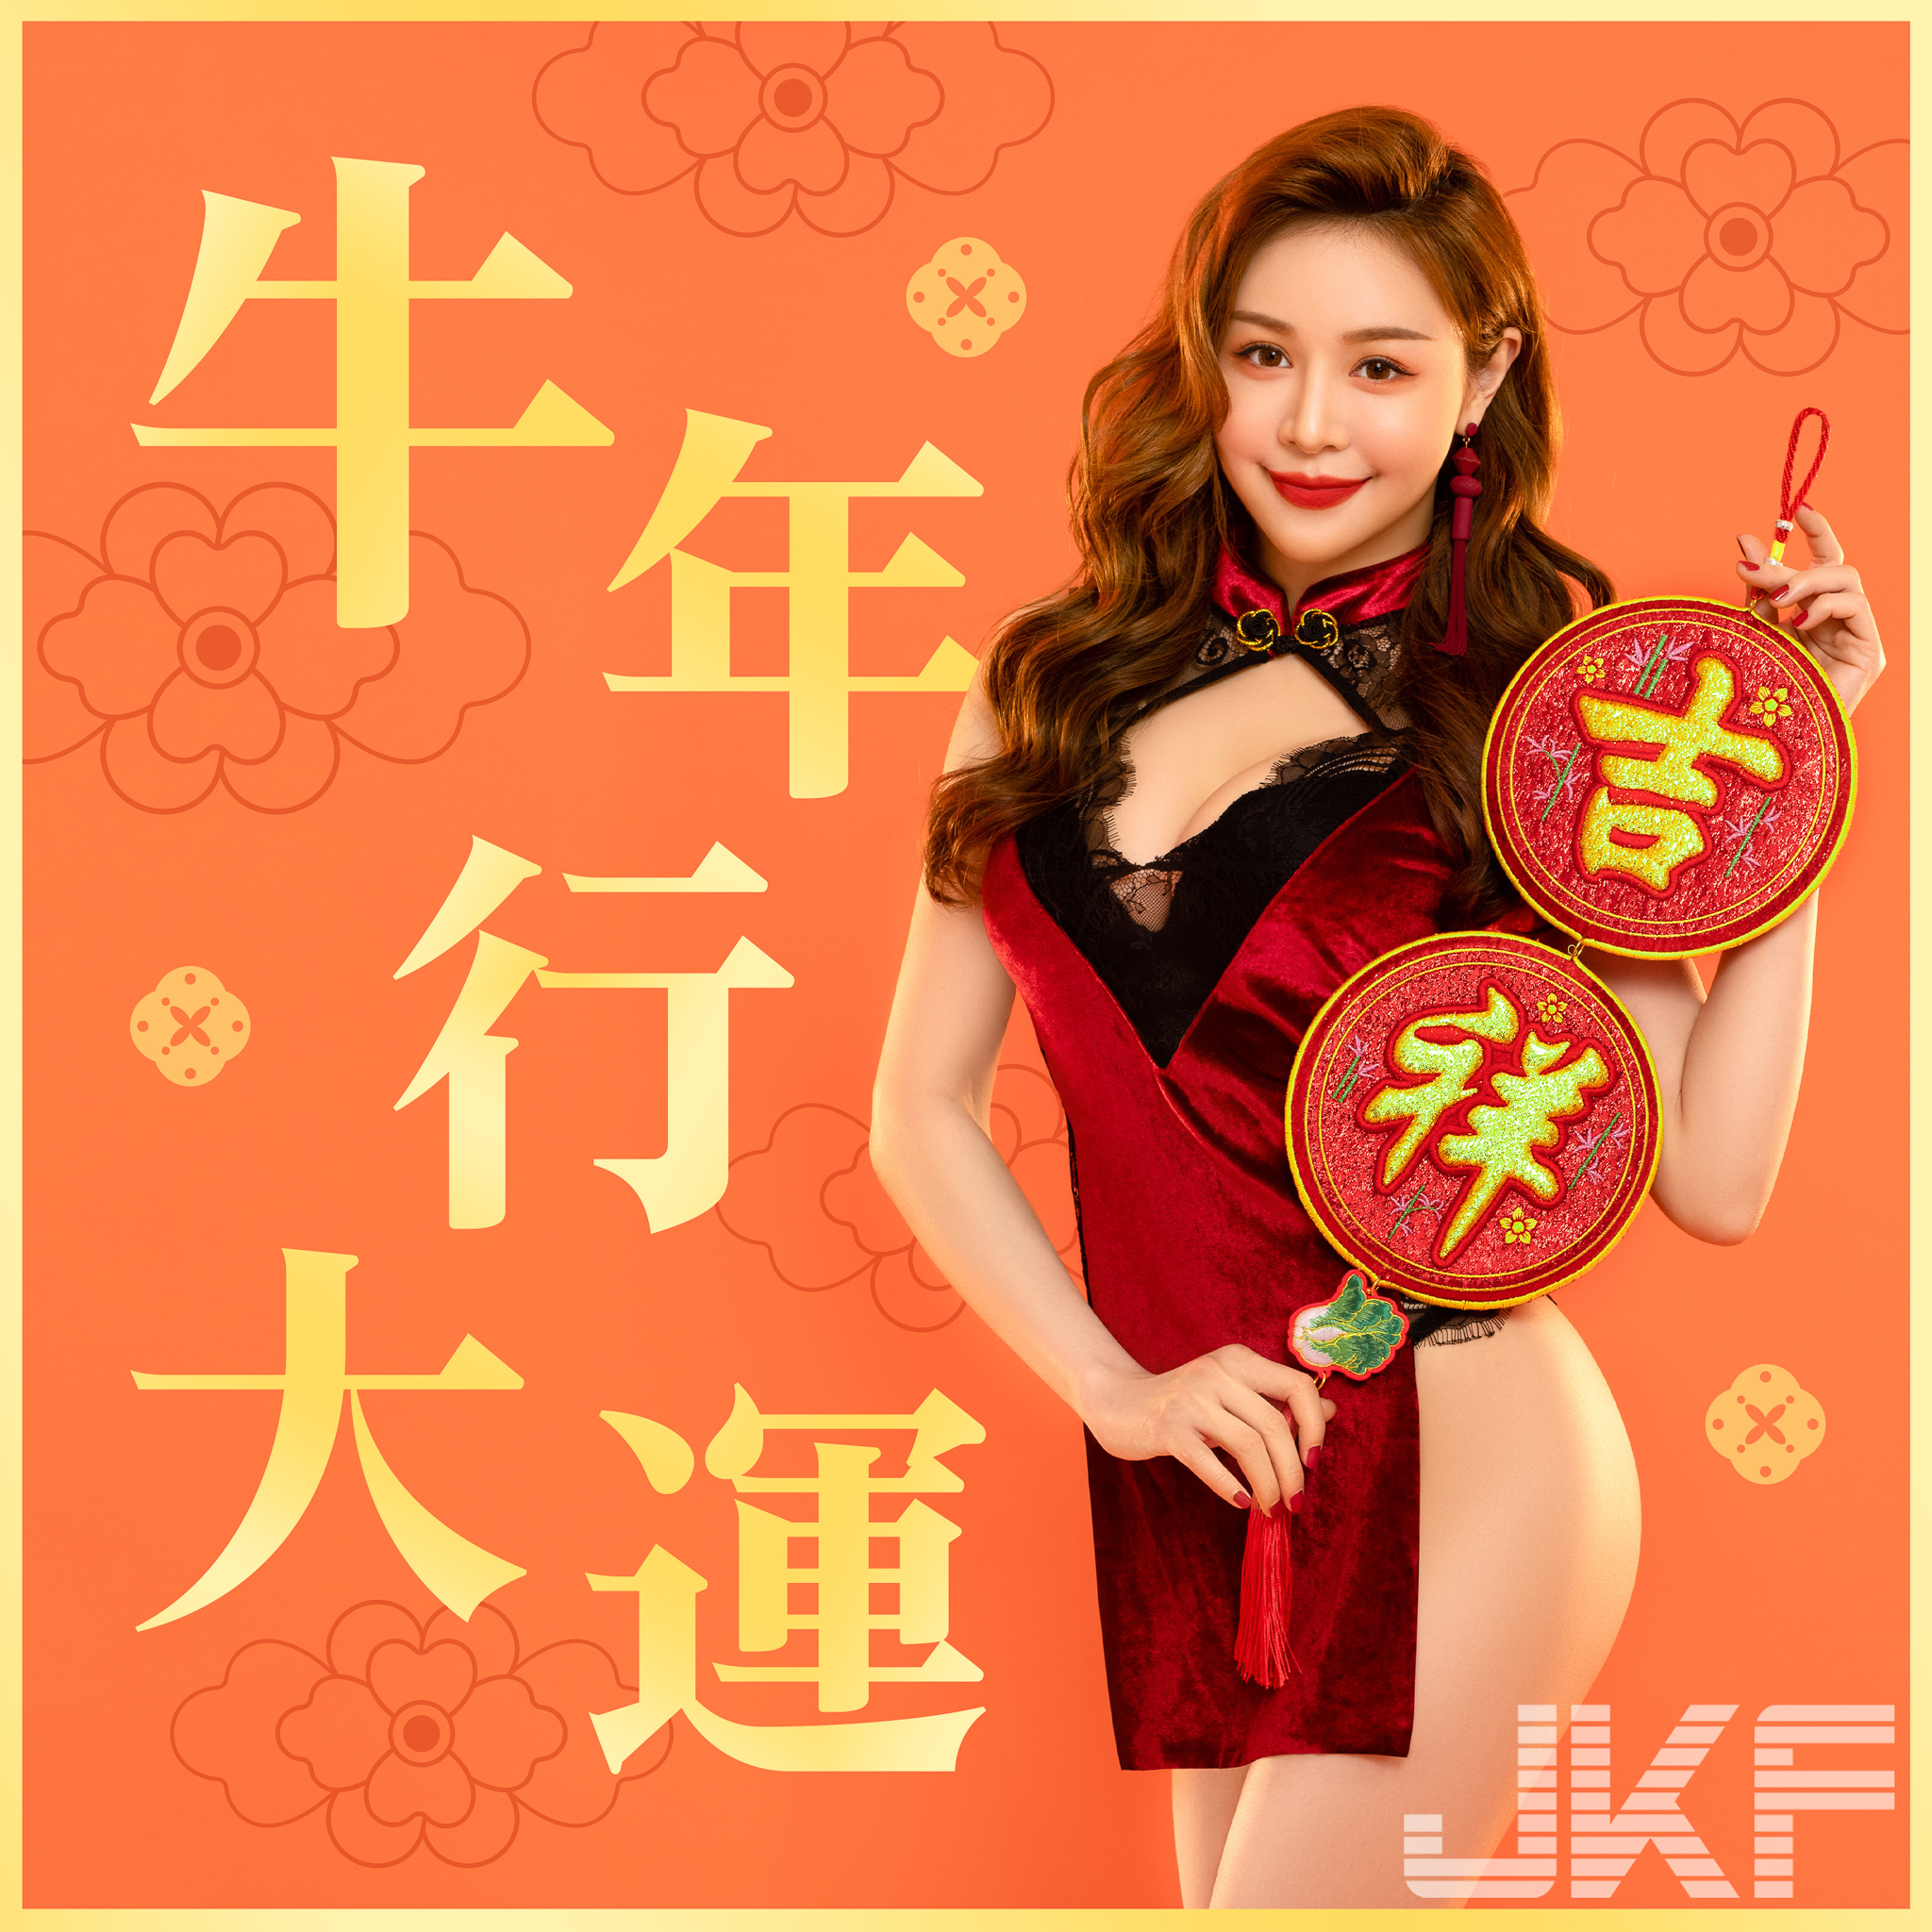 牛年行大運！「JKF女郎」火辣放送新年祝福「高衩旗袍」好想一起搓麻將！